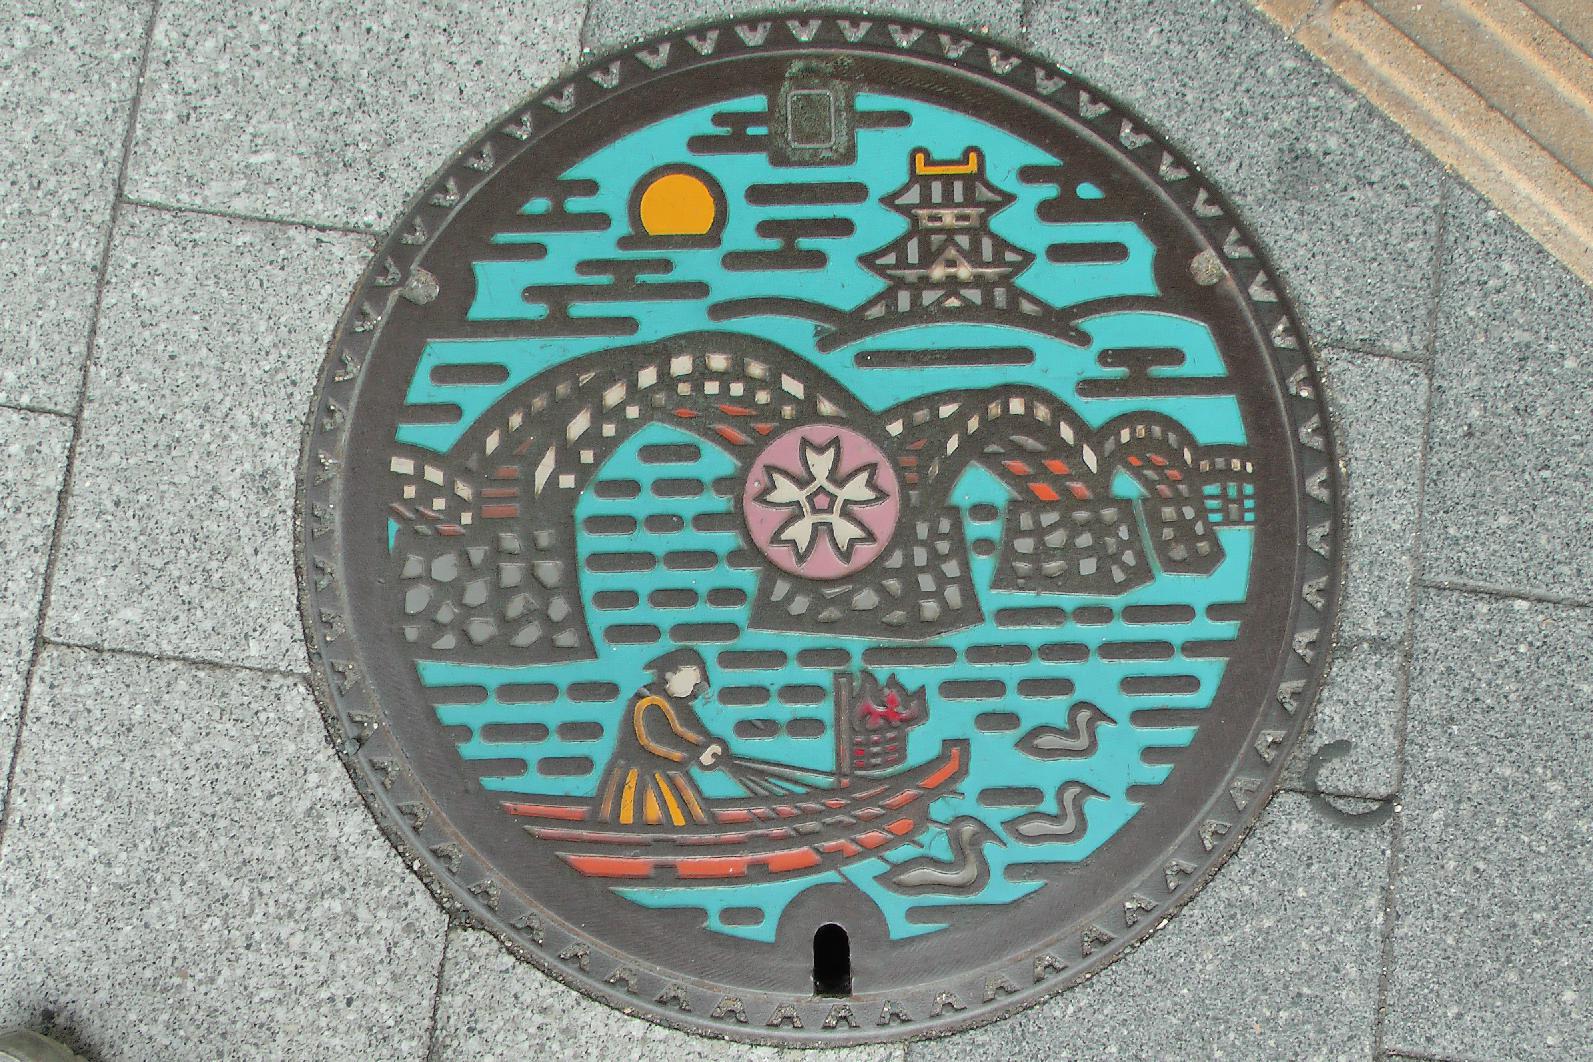 Iwakuni manhole cover